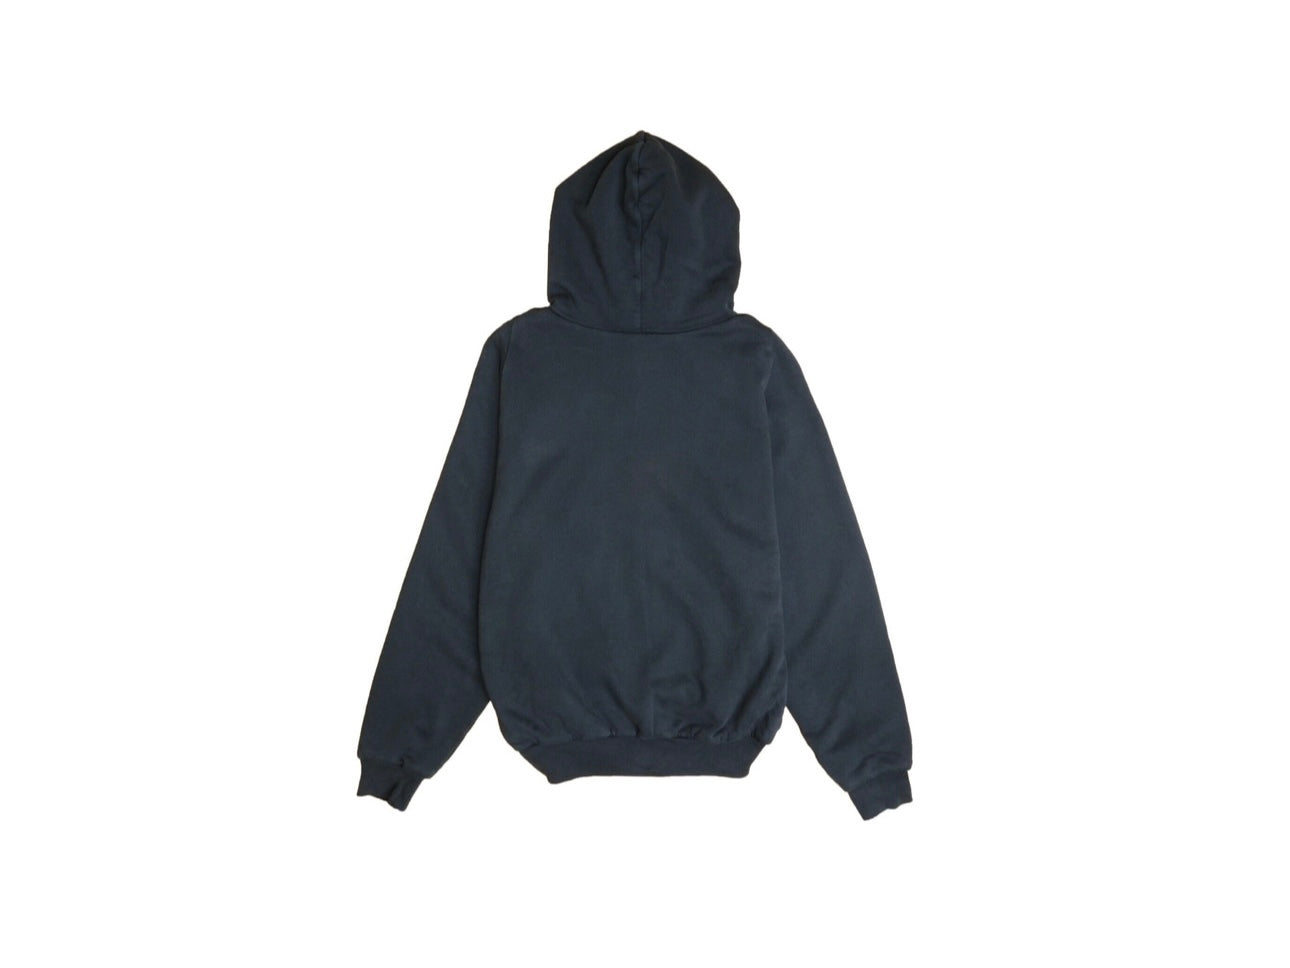 Yeezy gap pullover hoodie (unreleased)